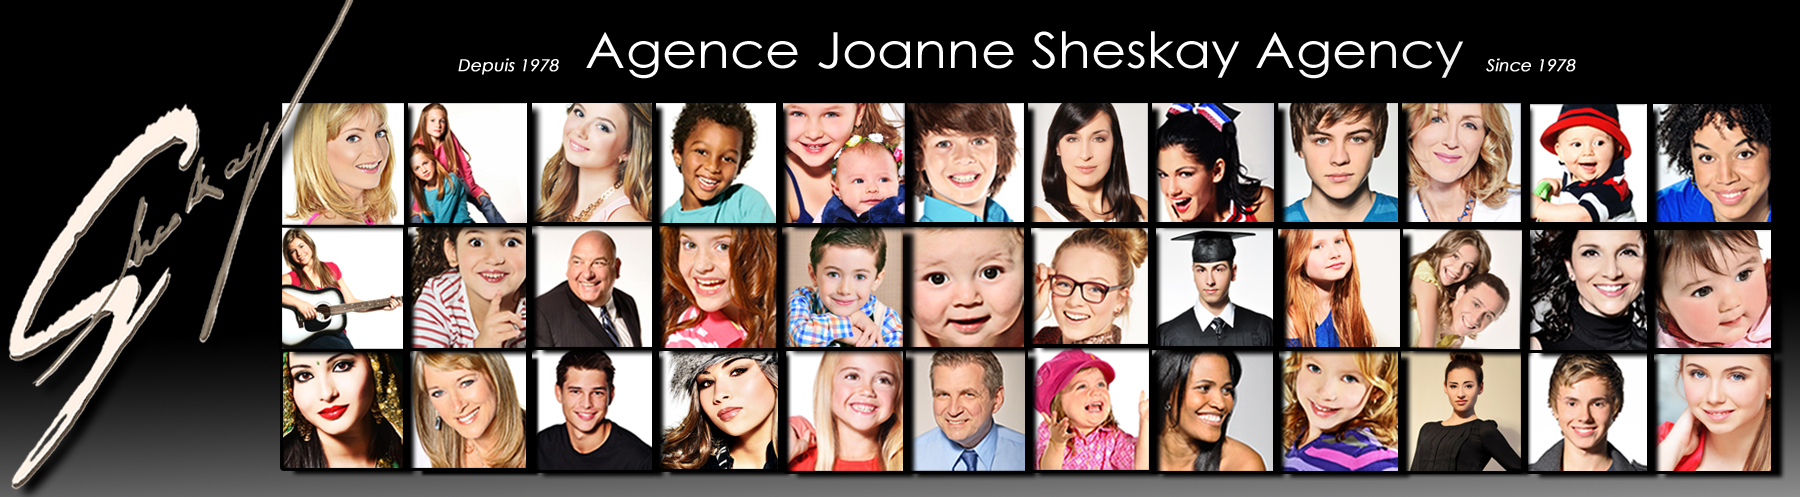 Agence Joanne Sheskay Agency